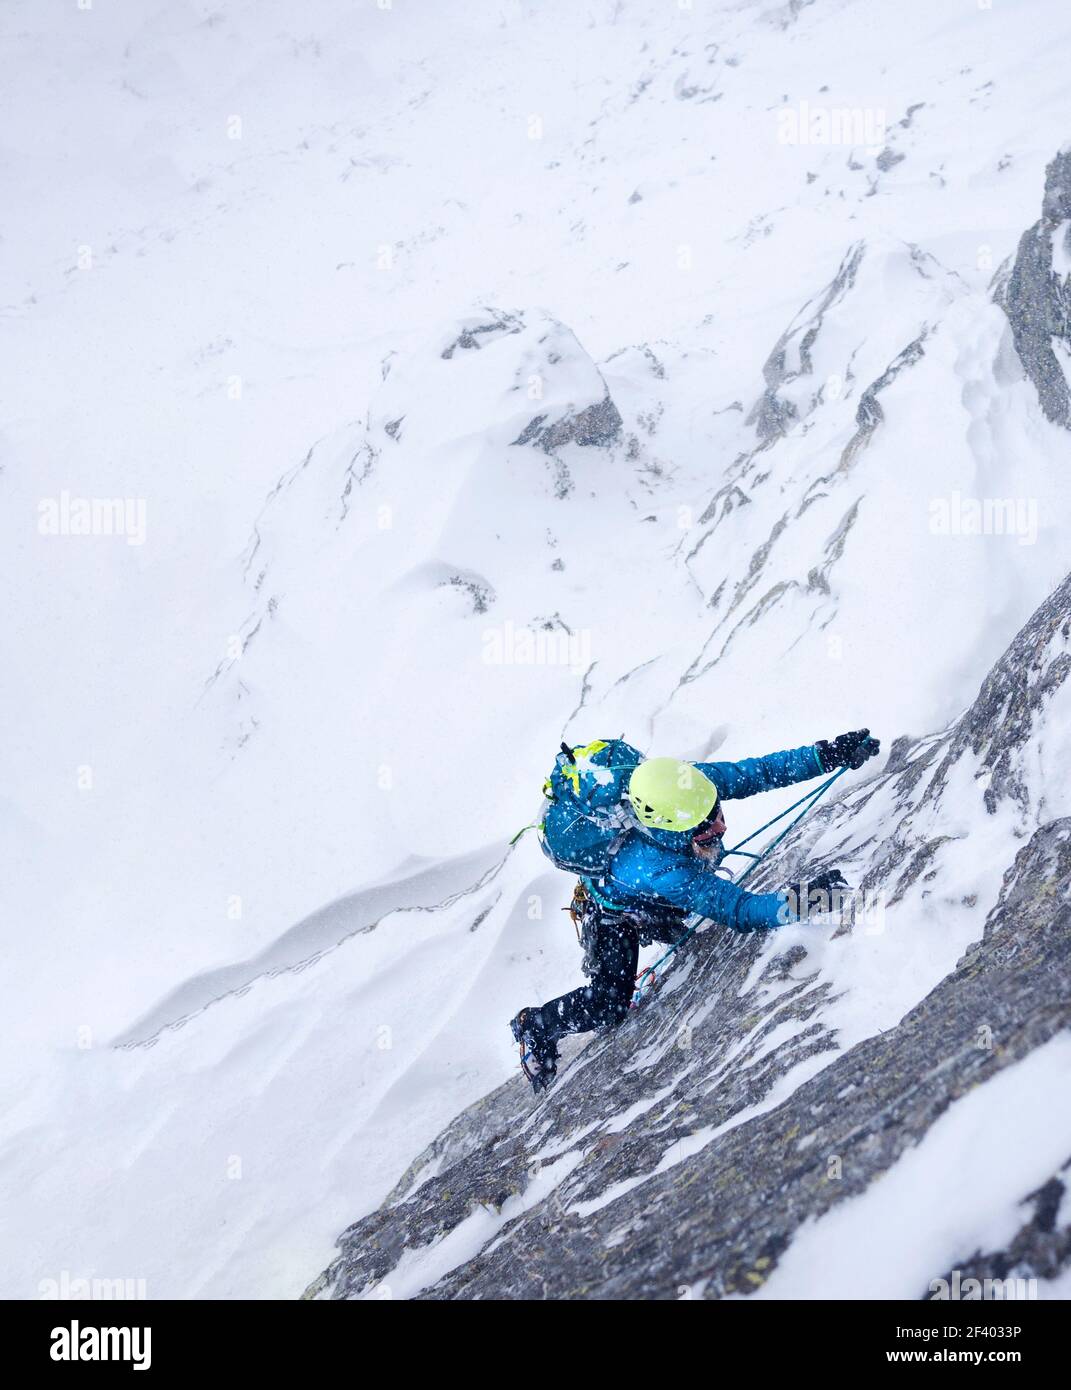 Femme grimpant dans la tempête lors d'une ascension hivernale extrême. Alpes italiennes de l'Ouest, Europe. Banque D'Images